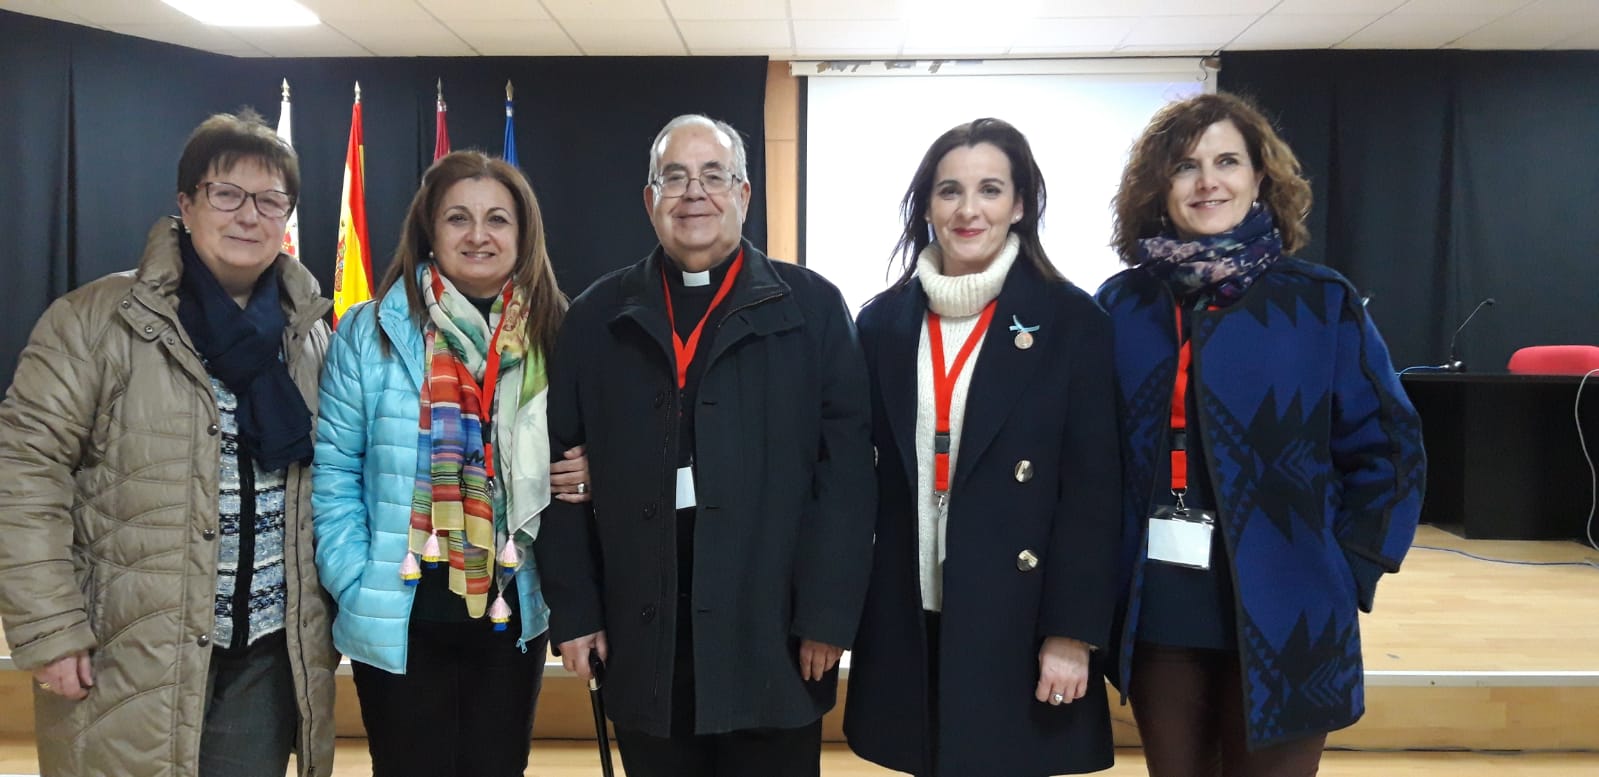 La Cofradía de la Virgen asiste al X Encuentro Diocesano en Molina